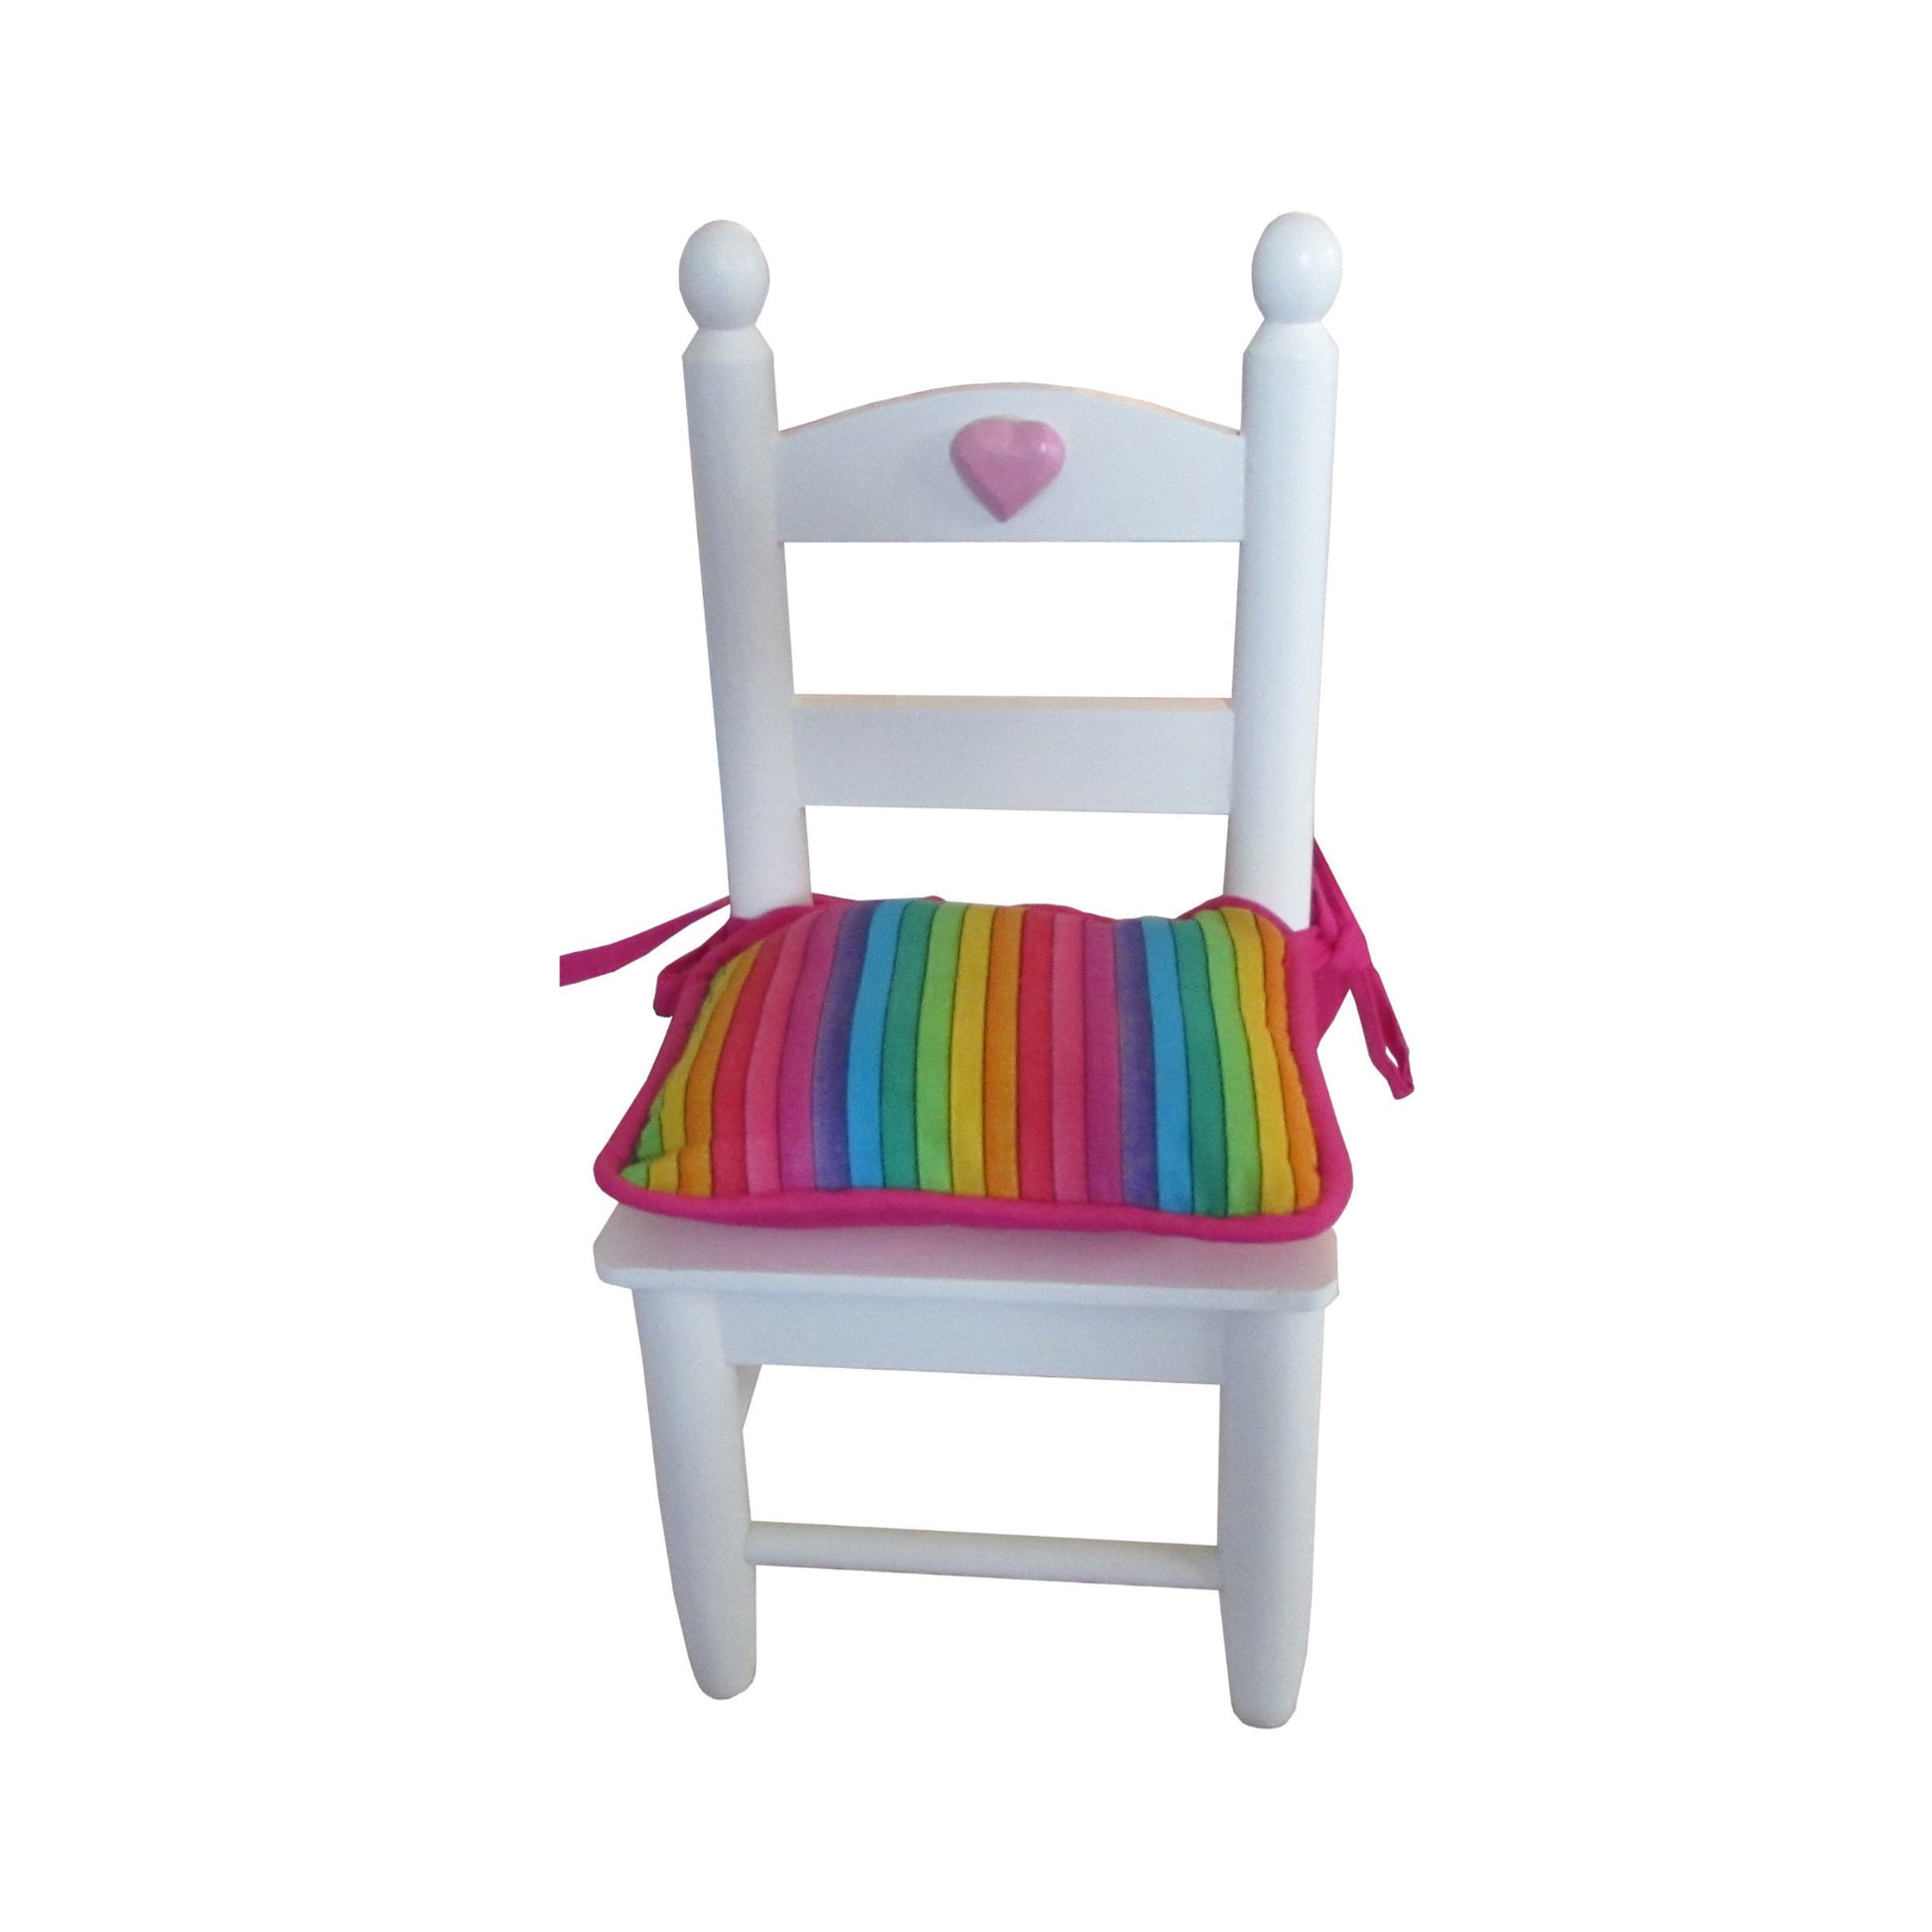 Rainbow Doll Chair Cushion for 18-inch dolls